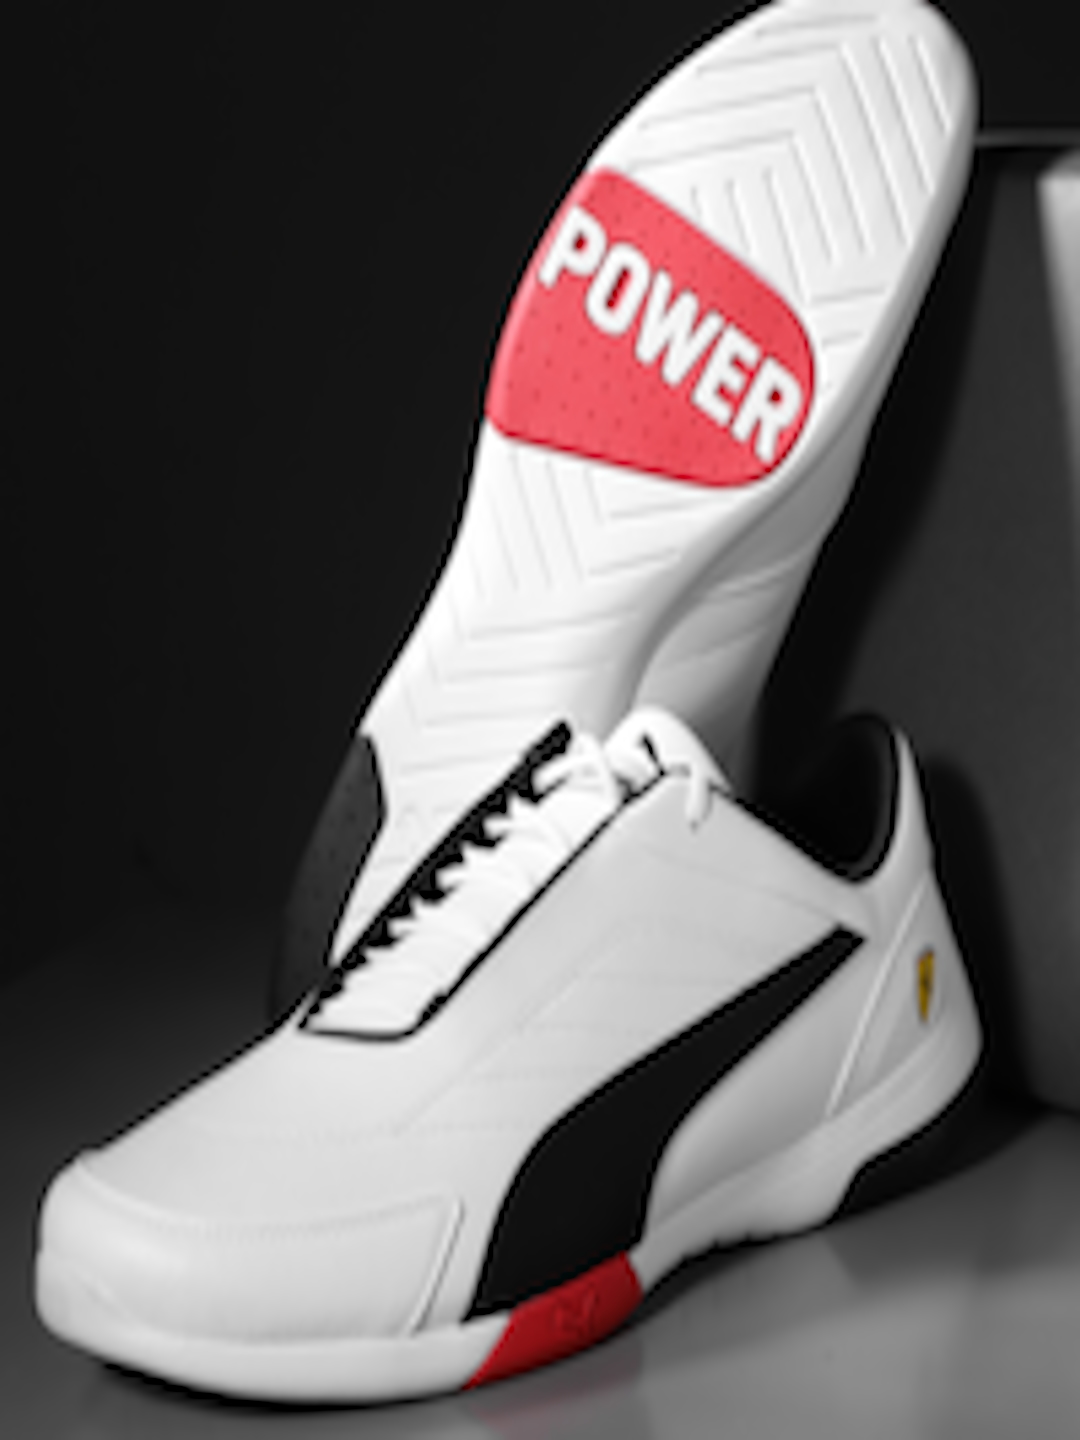 puma power shoes